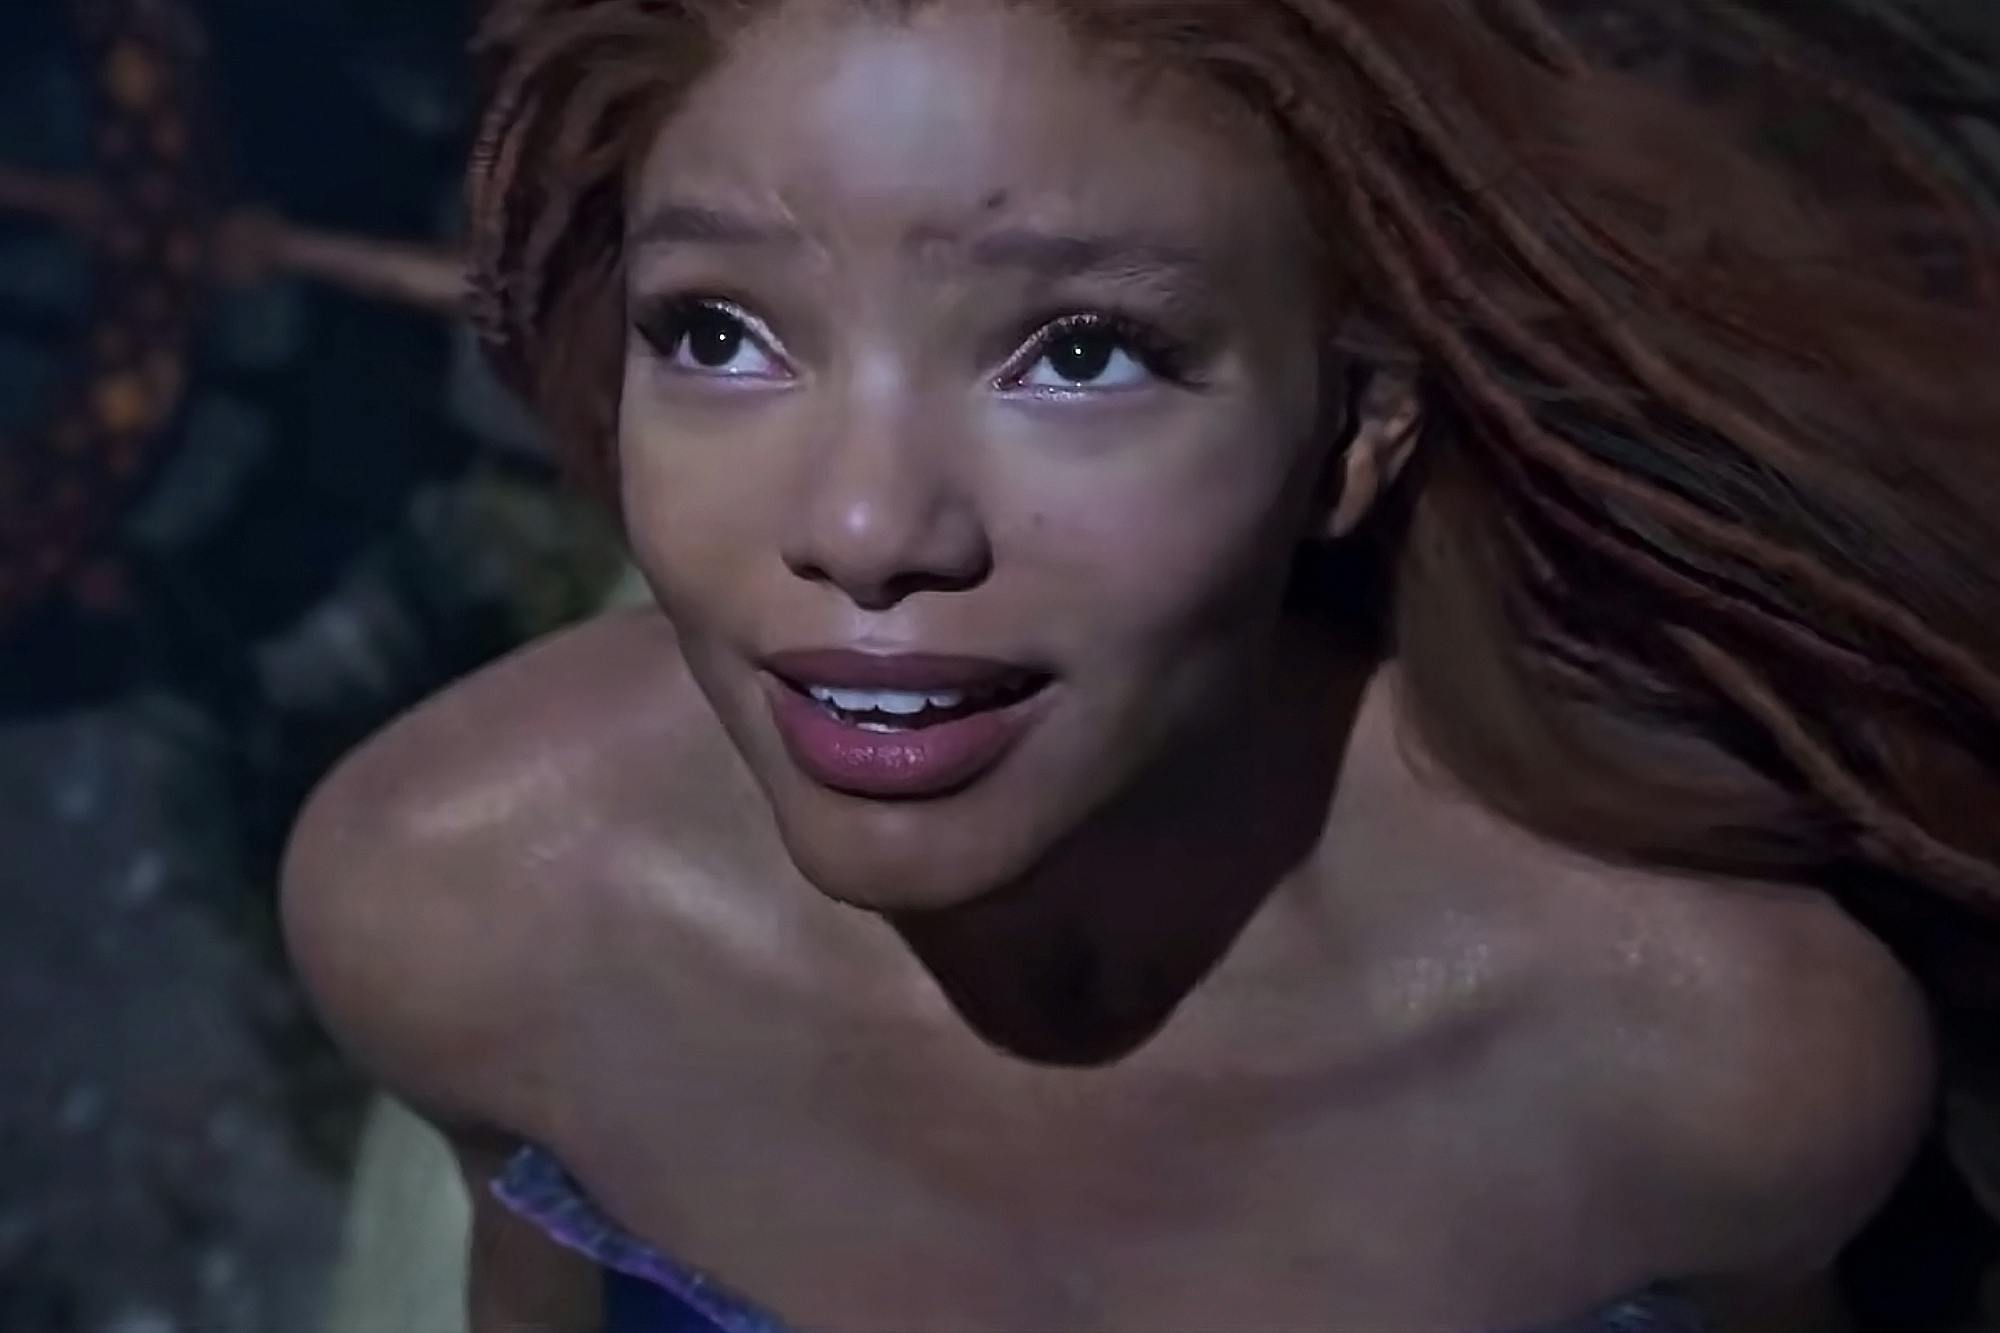 Halle Bailey spiller Ariel i den nye fortolkning af "Den lille havfrue". Det er første gang, der er en sort kvinde i hovedrollen.